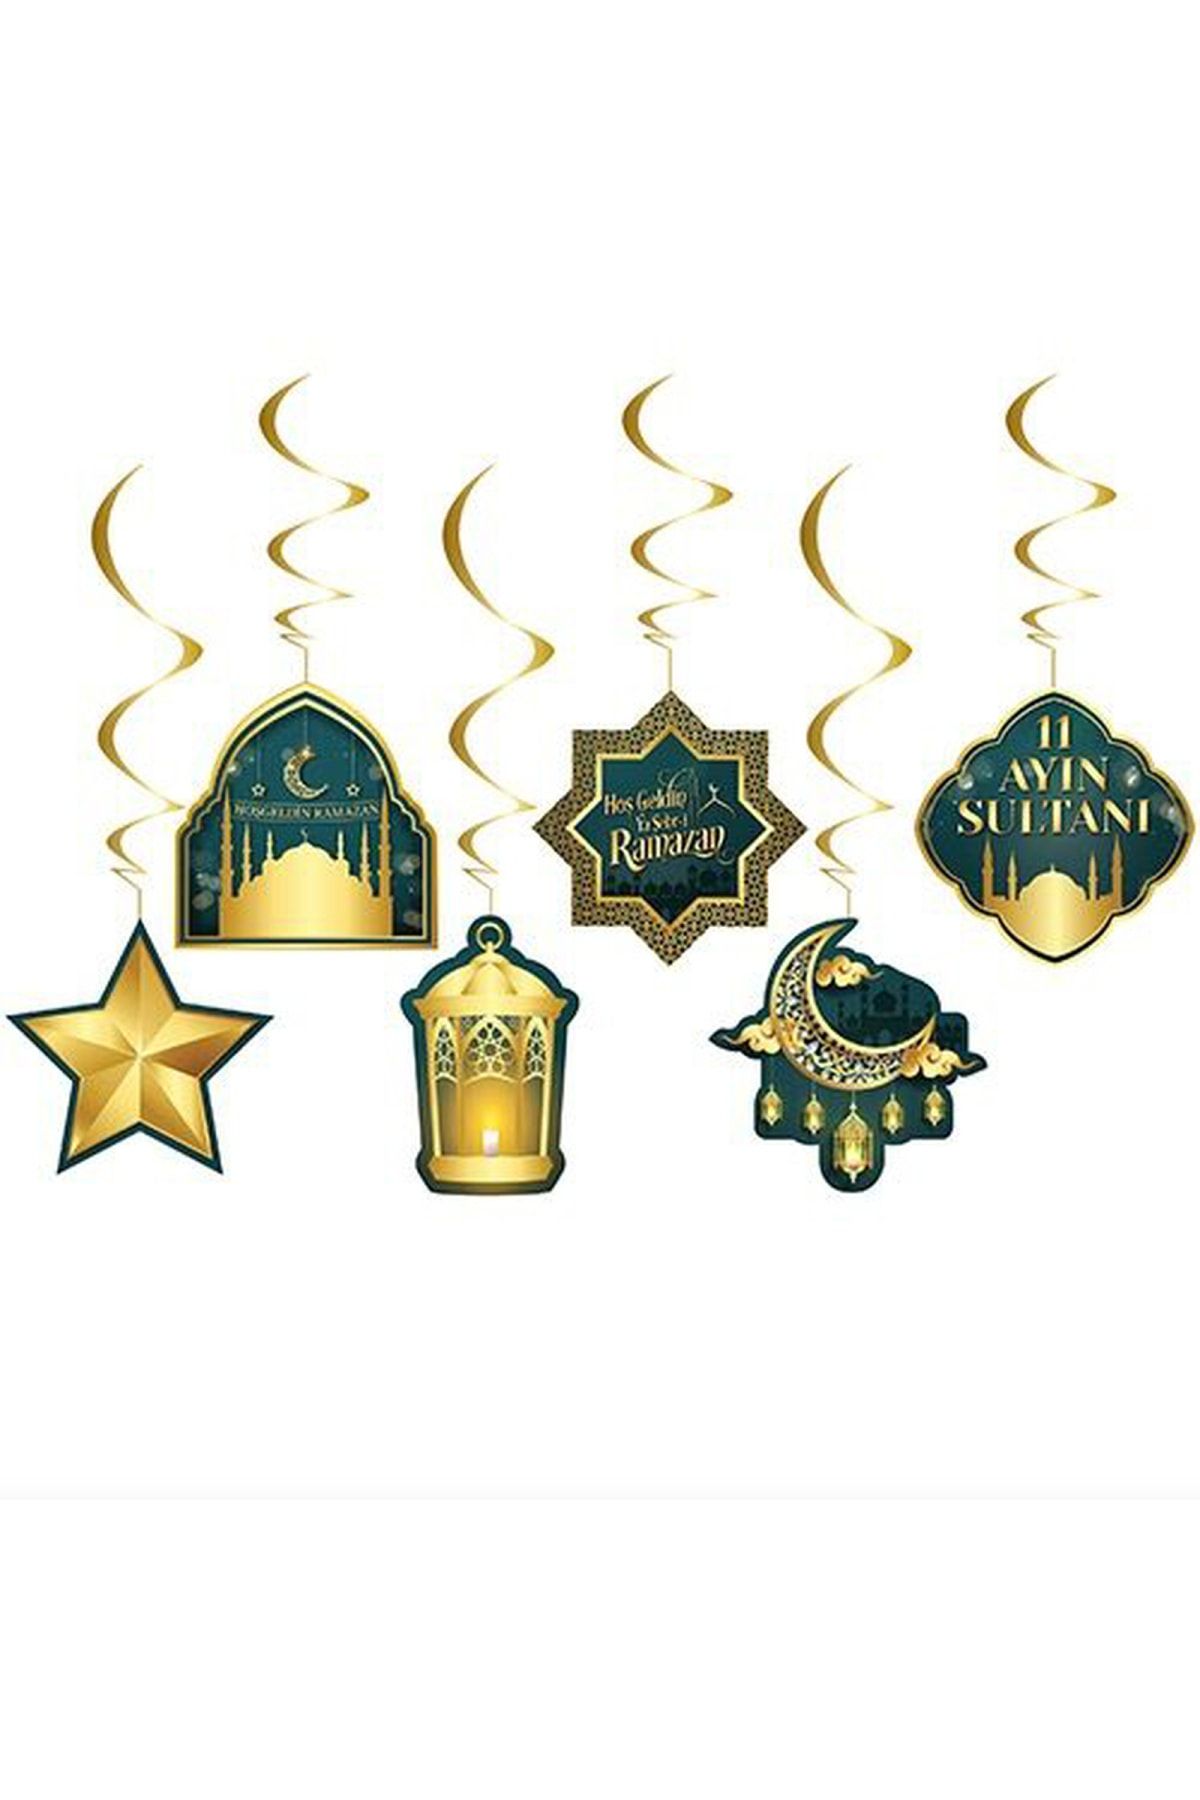 Huzur Party Store 6'lı Tavan Süs Hoşgeldin Ya Şehri Ramazan Bayramı 11 Ayın Sultanı Temalı Sarkıt Dini Islami Süsü